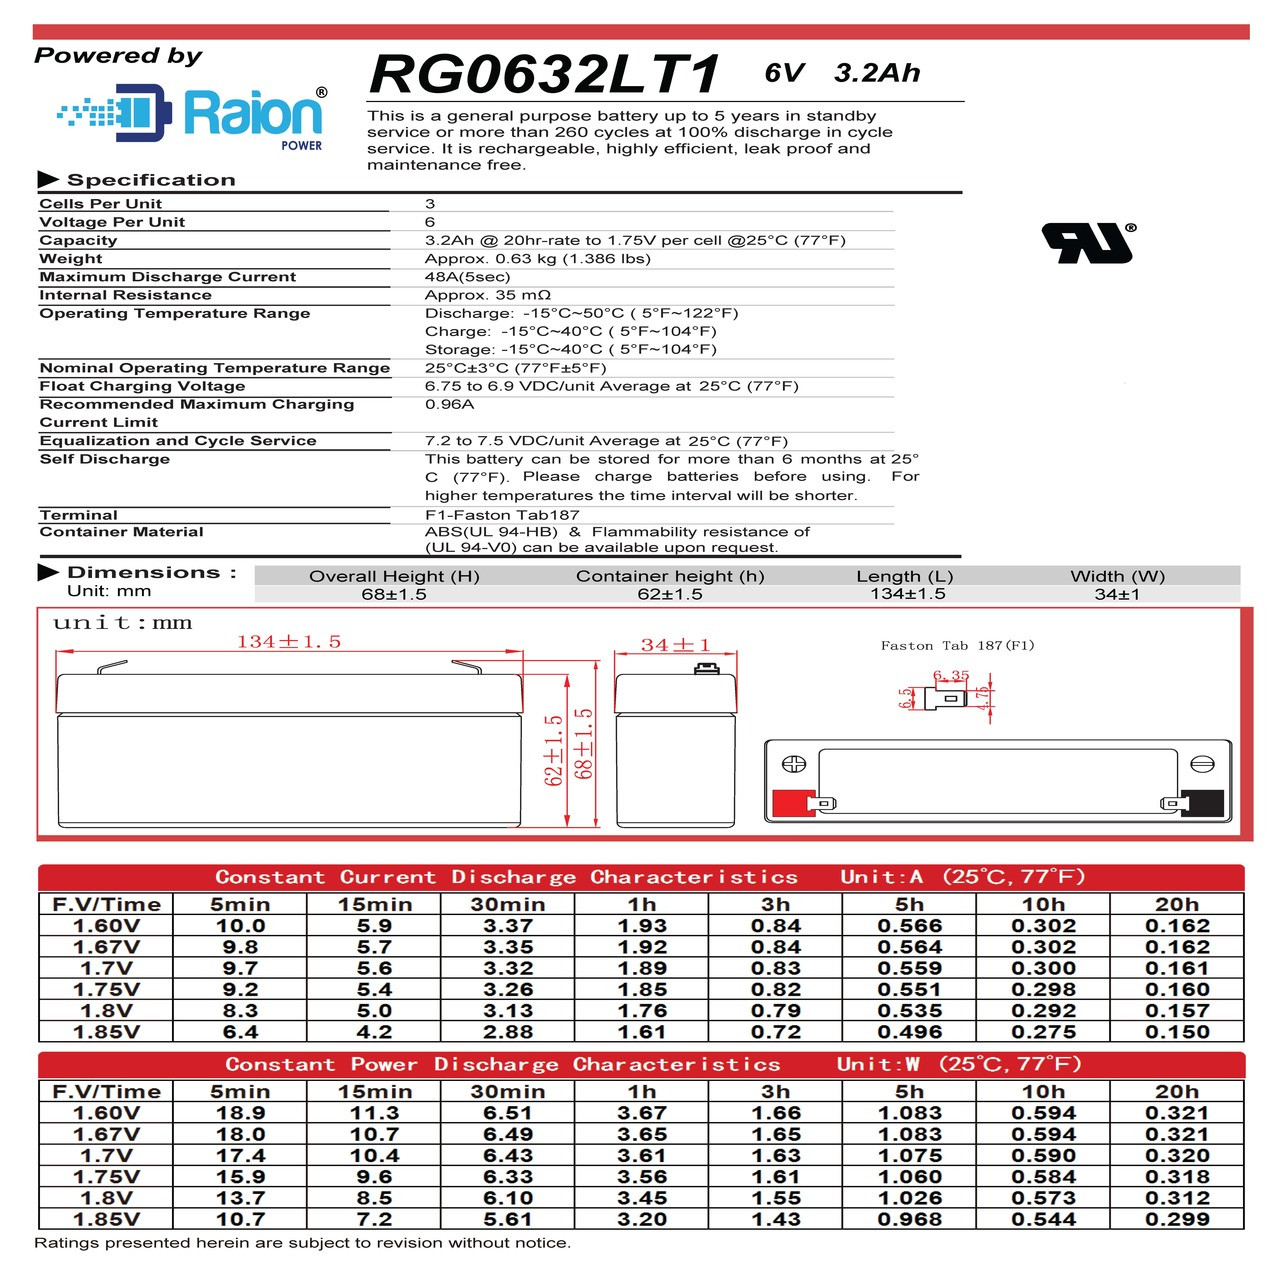 Raion Power RG0632LT1 6V 3.2Ah Battery Data Sheet for Spacelabs Medical 90501 Pulse Oximeter